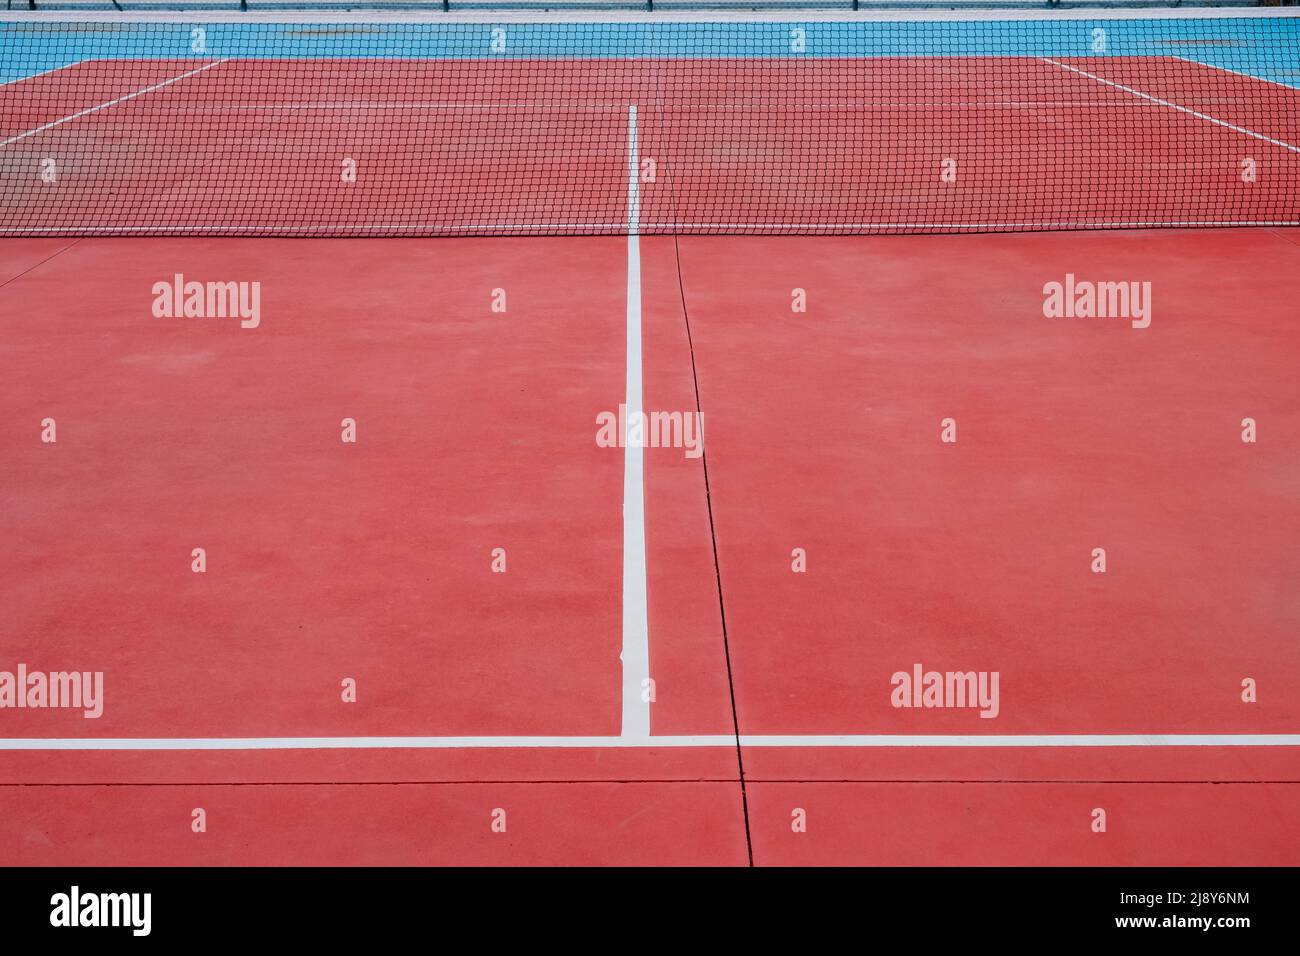 Vue sur un court de tennis rouge en surface dure Banque D'Images